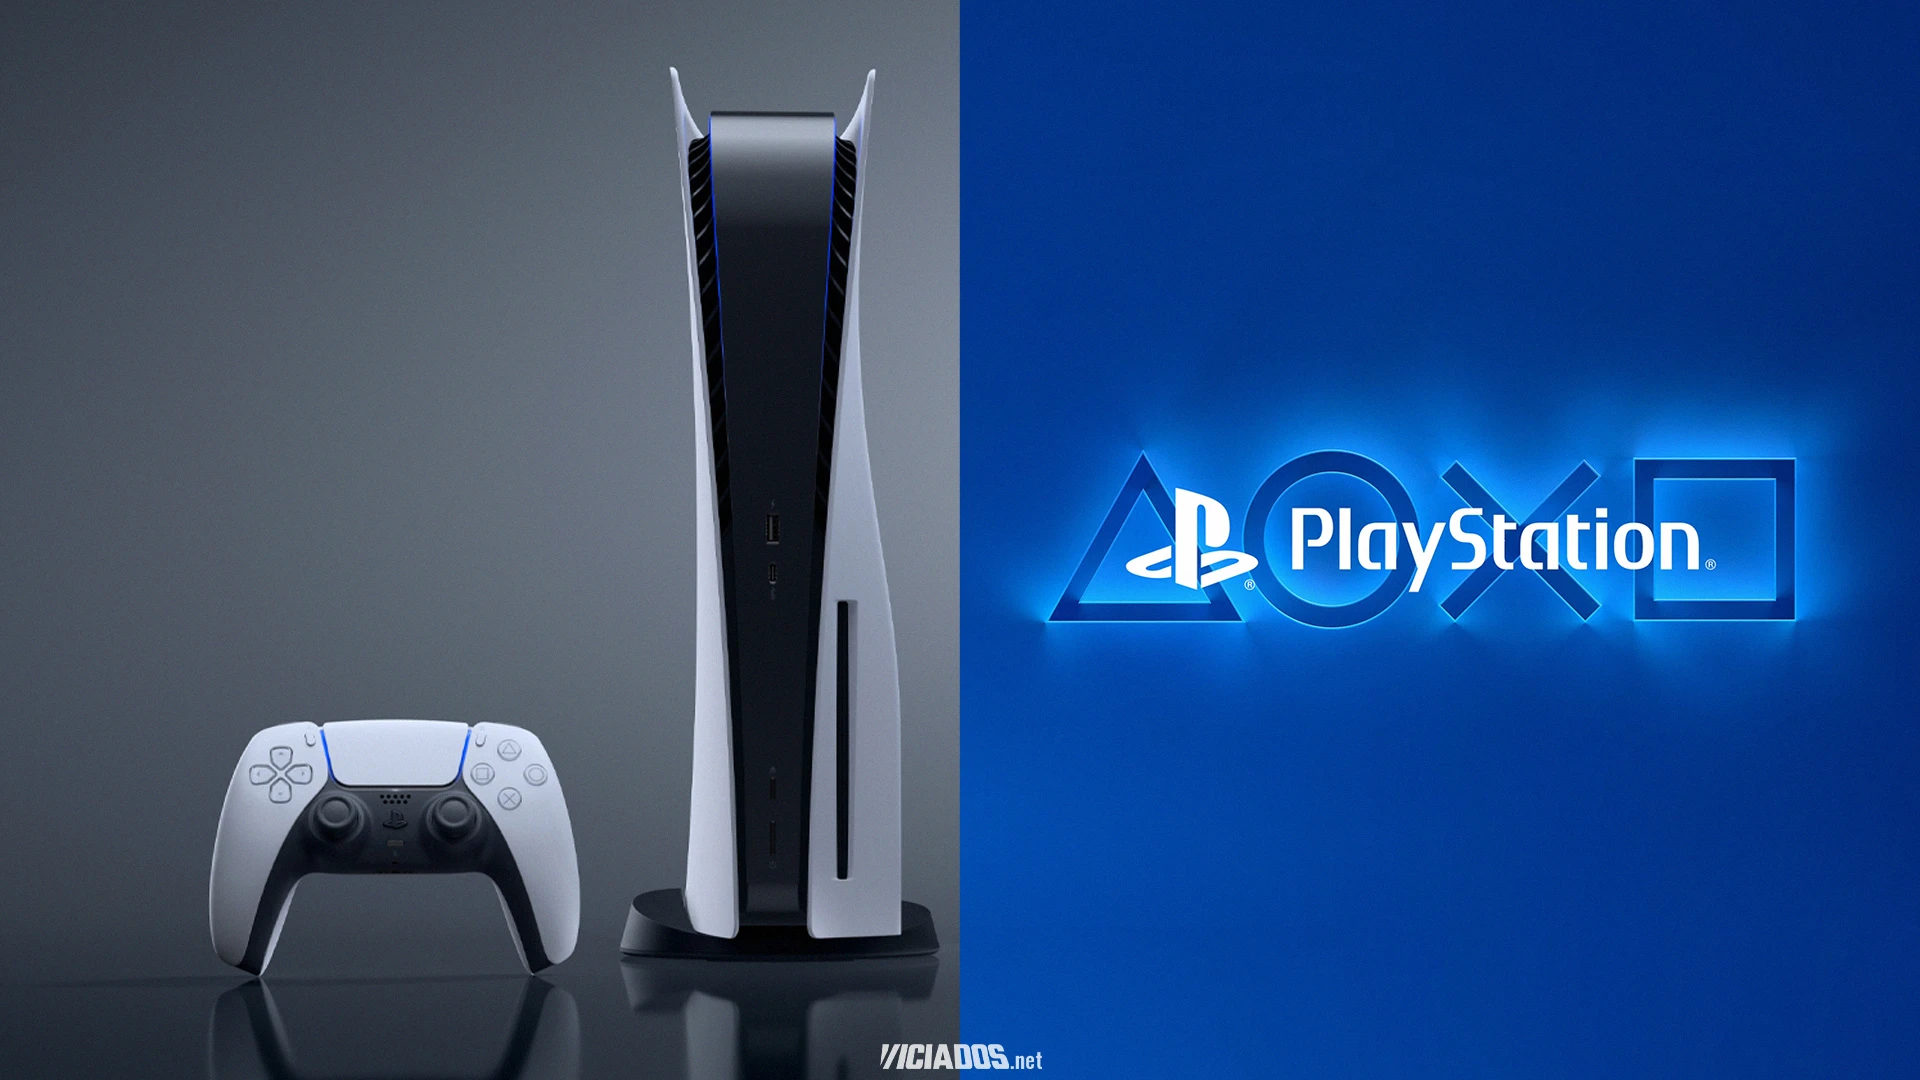 O mais novo exclusivo de PlayStation 5 está com um desconto interessante por tempo limitado! 2023 Viciados